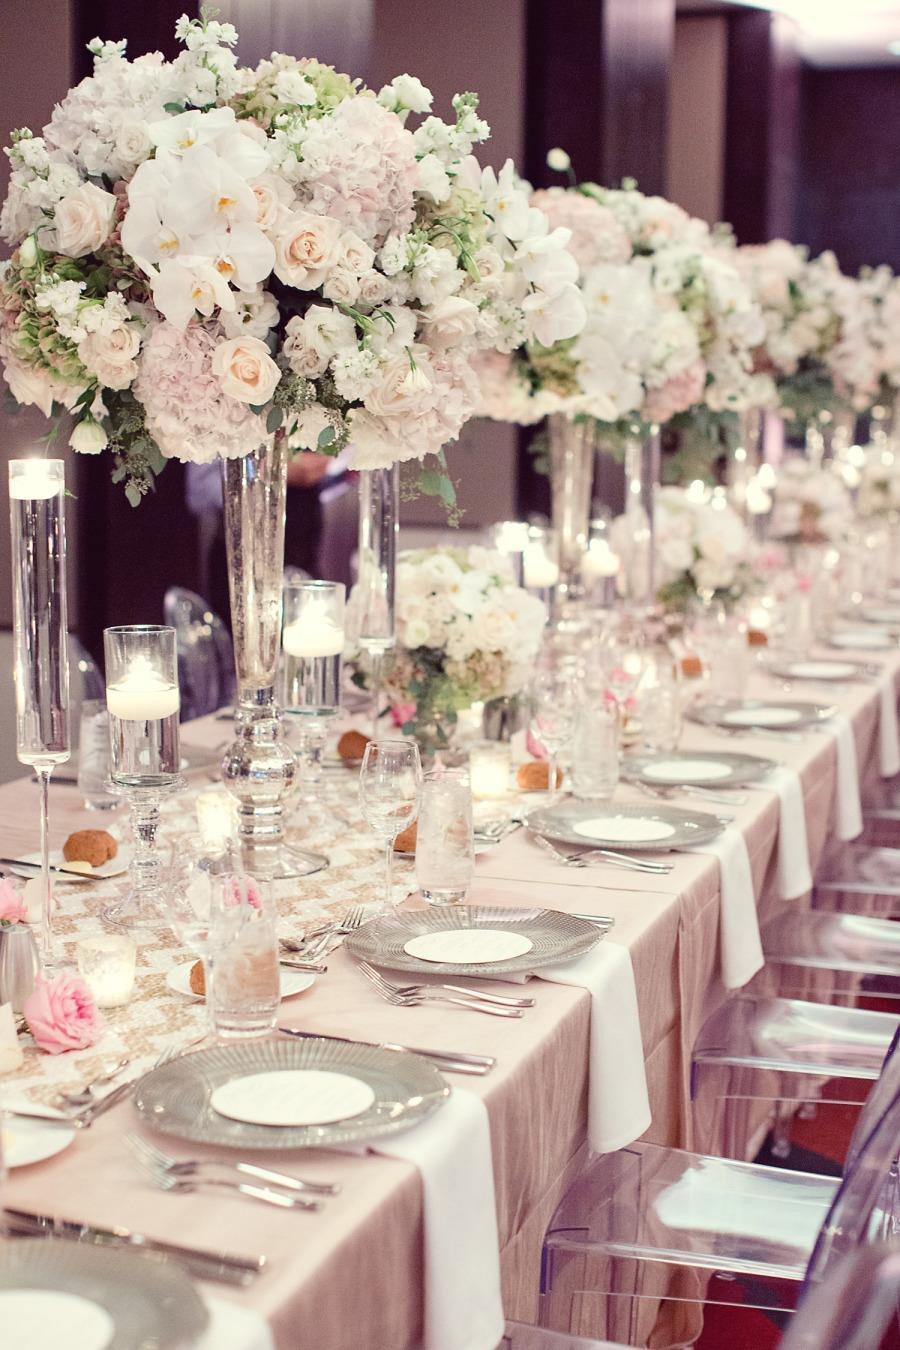 Wedding-flowers-and-reception-ideas
 The Prettiest Wedding Flower Ideas From 2013 Weddbook